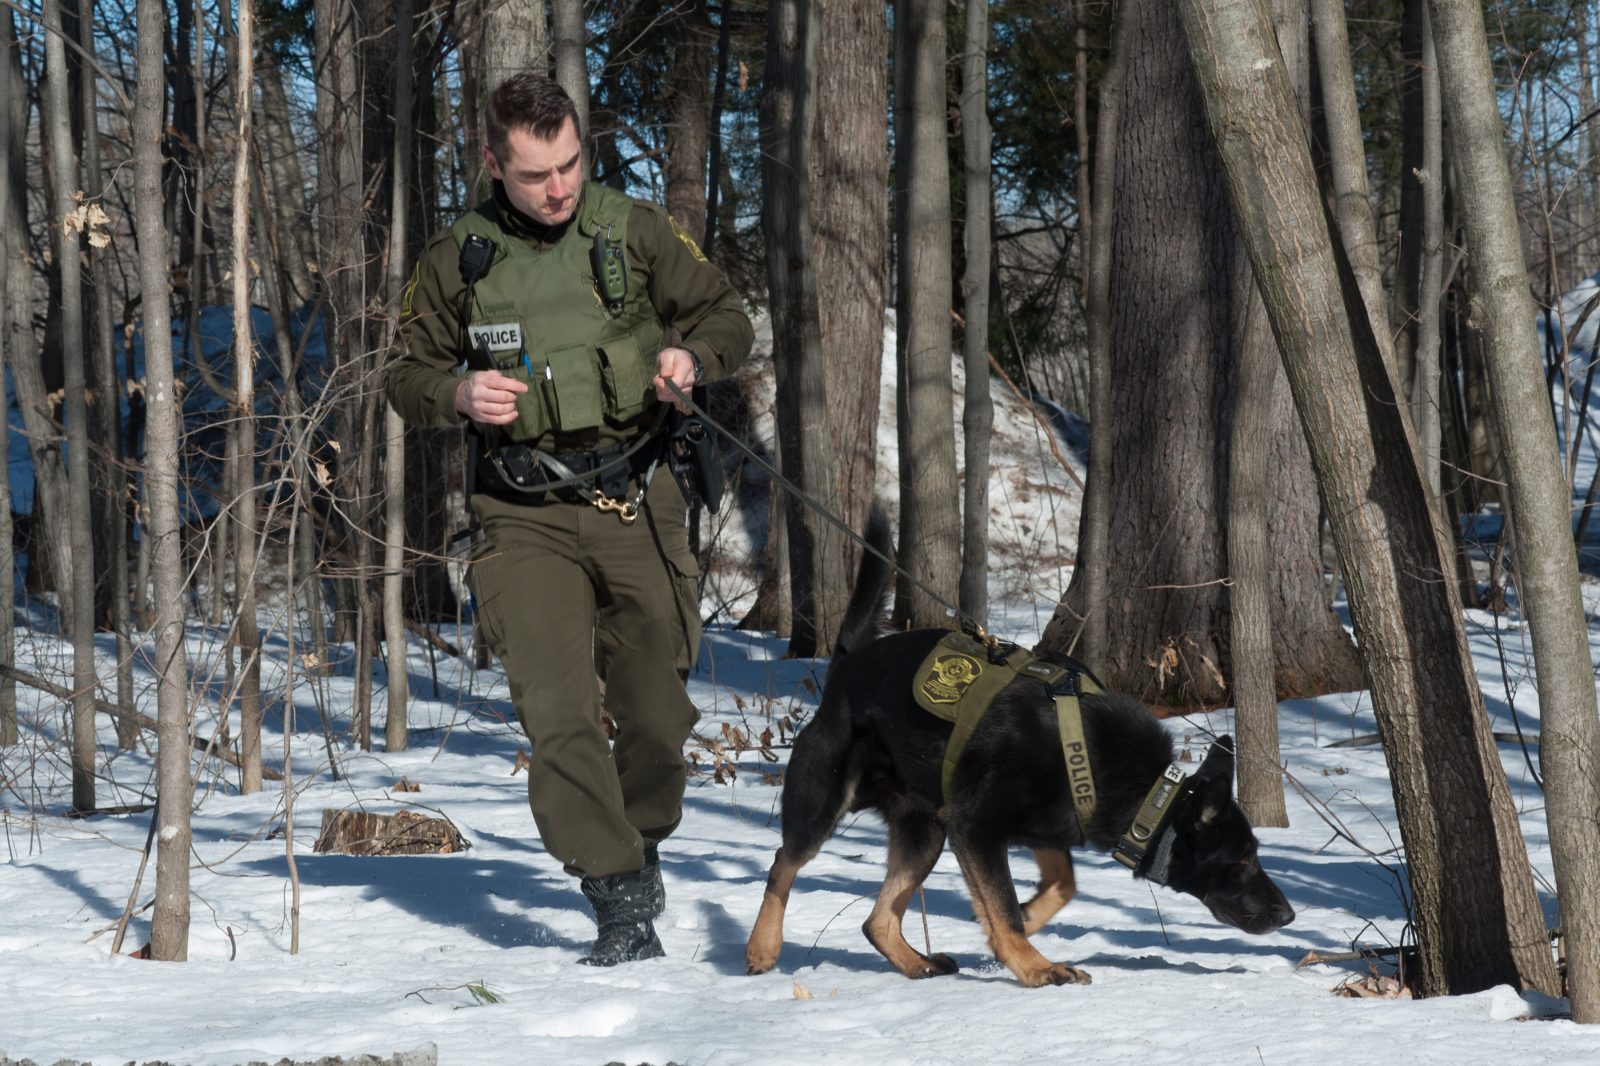 Le chien policier Hyke, un atout pour la Sûreté du Québec